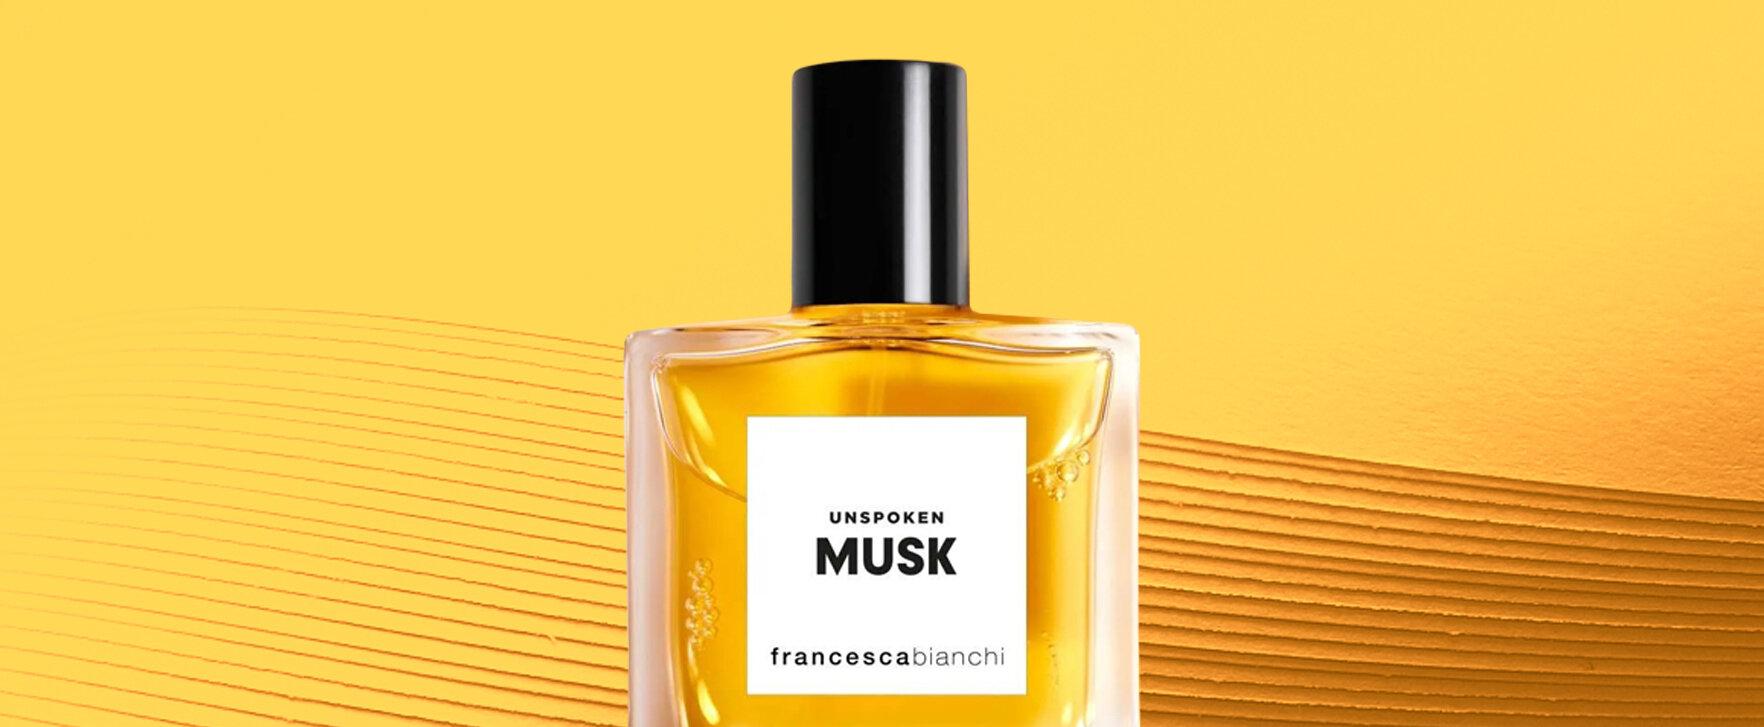 „Unspoken Musk“ - Francesca Bianchi stellt neues Parfum vor